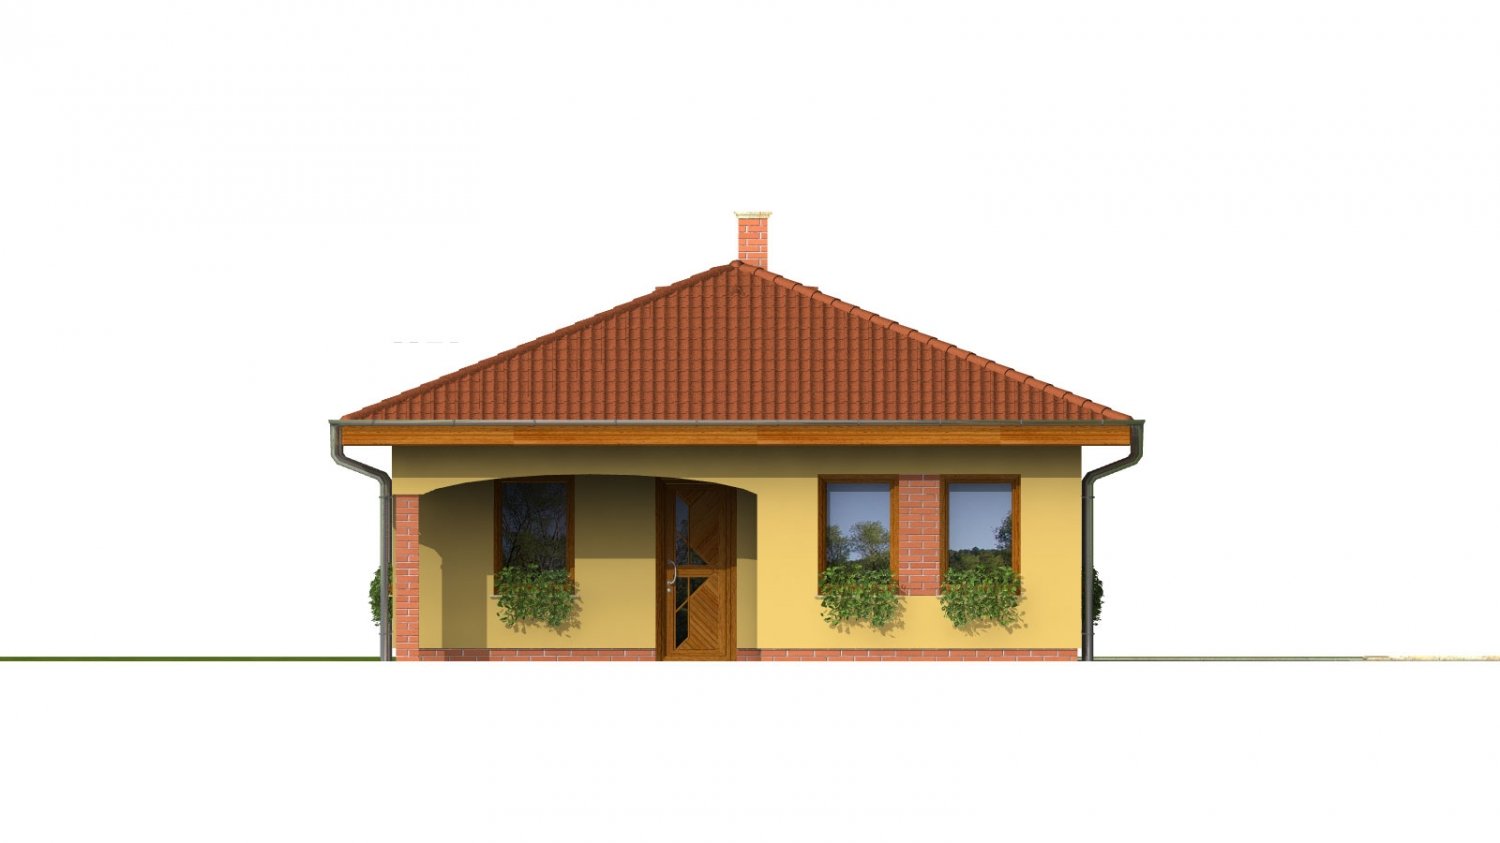 Zrkadlový pohľad 1. - Projekt domu na úzký pozemek s valbovou střechou a terasou.